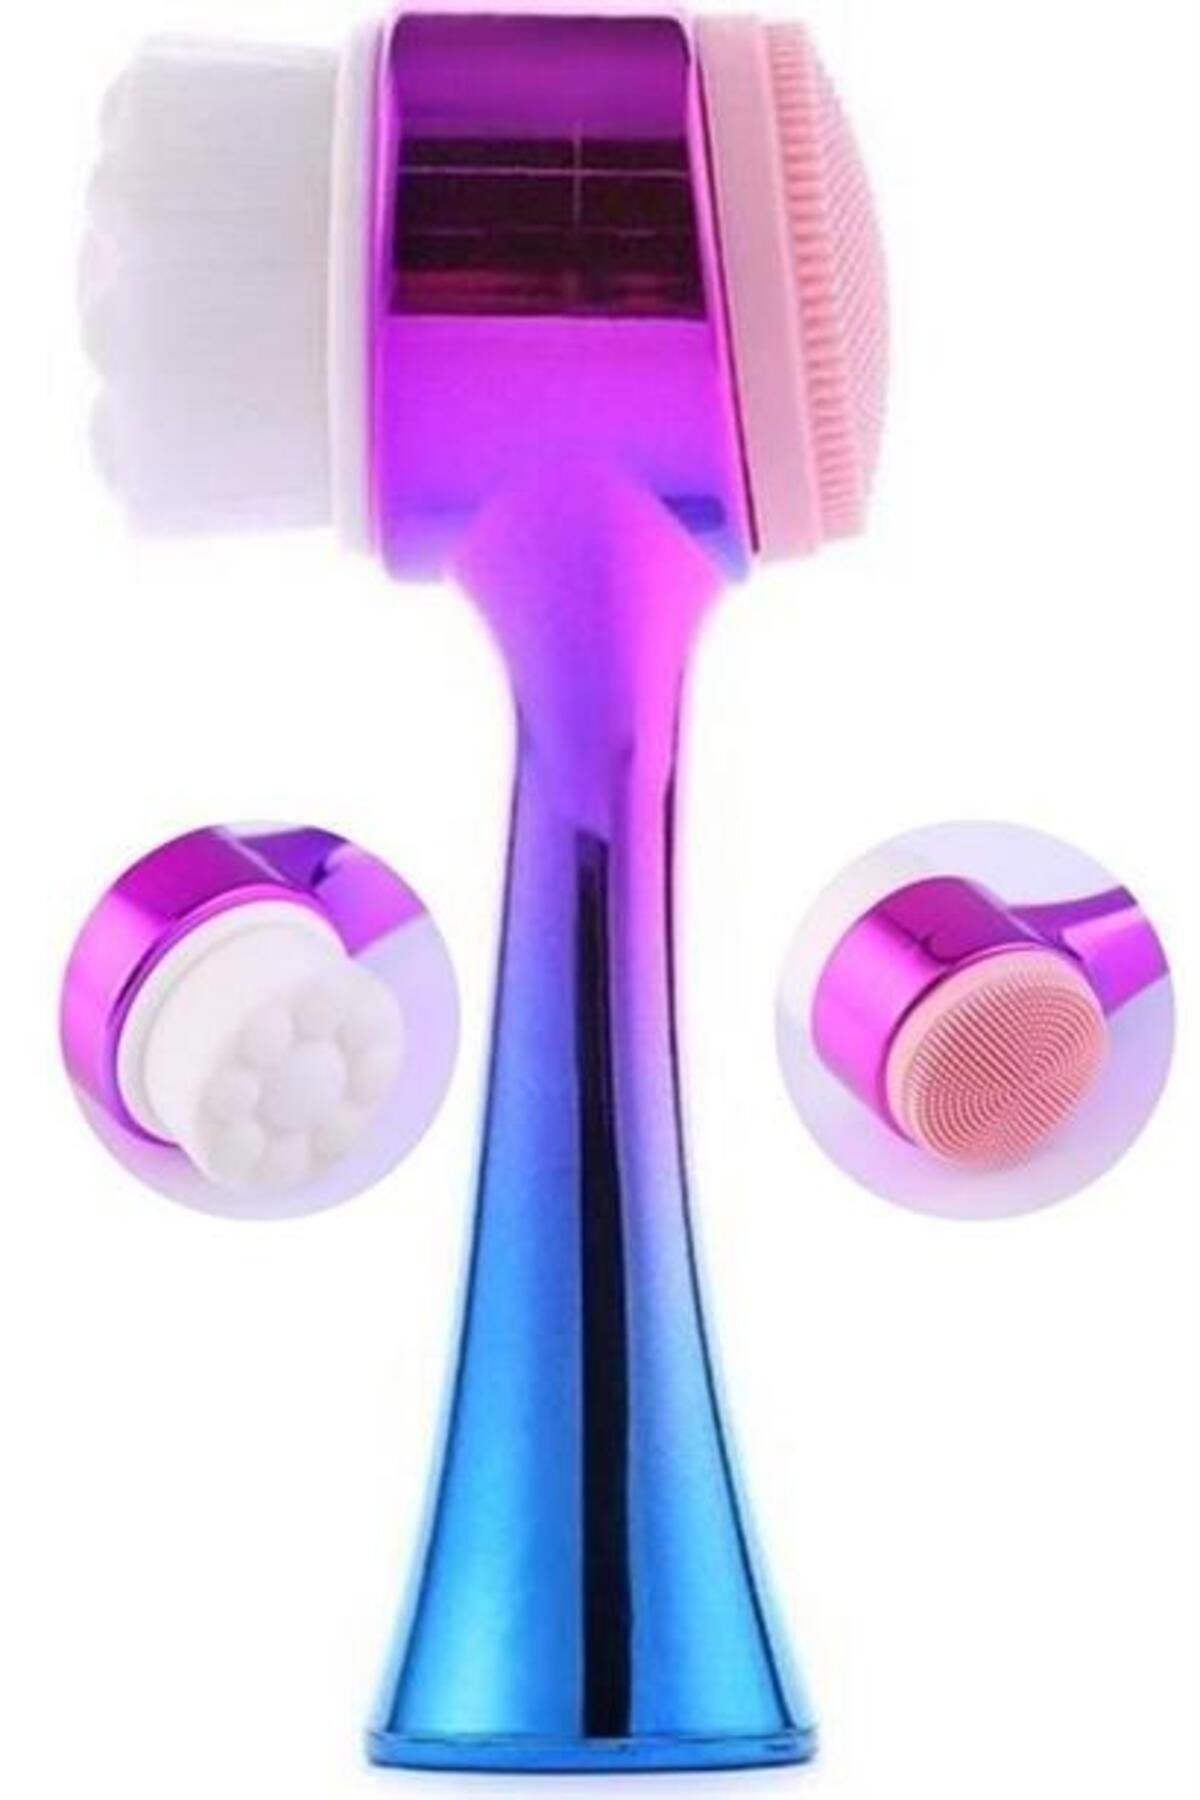 Enpovi Çift İşlevli Renkli Cilt Yüz Temizleme Fırçası Peeling Masaj Etkili Gözenek Temizleyici Alet